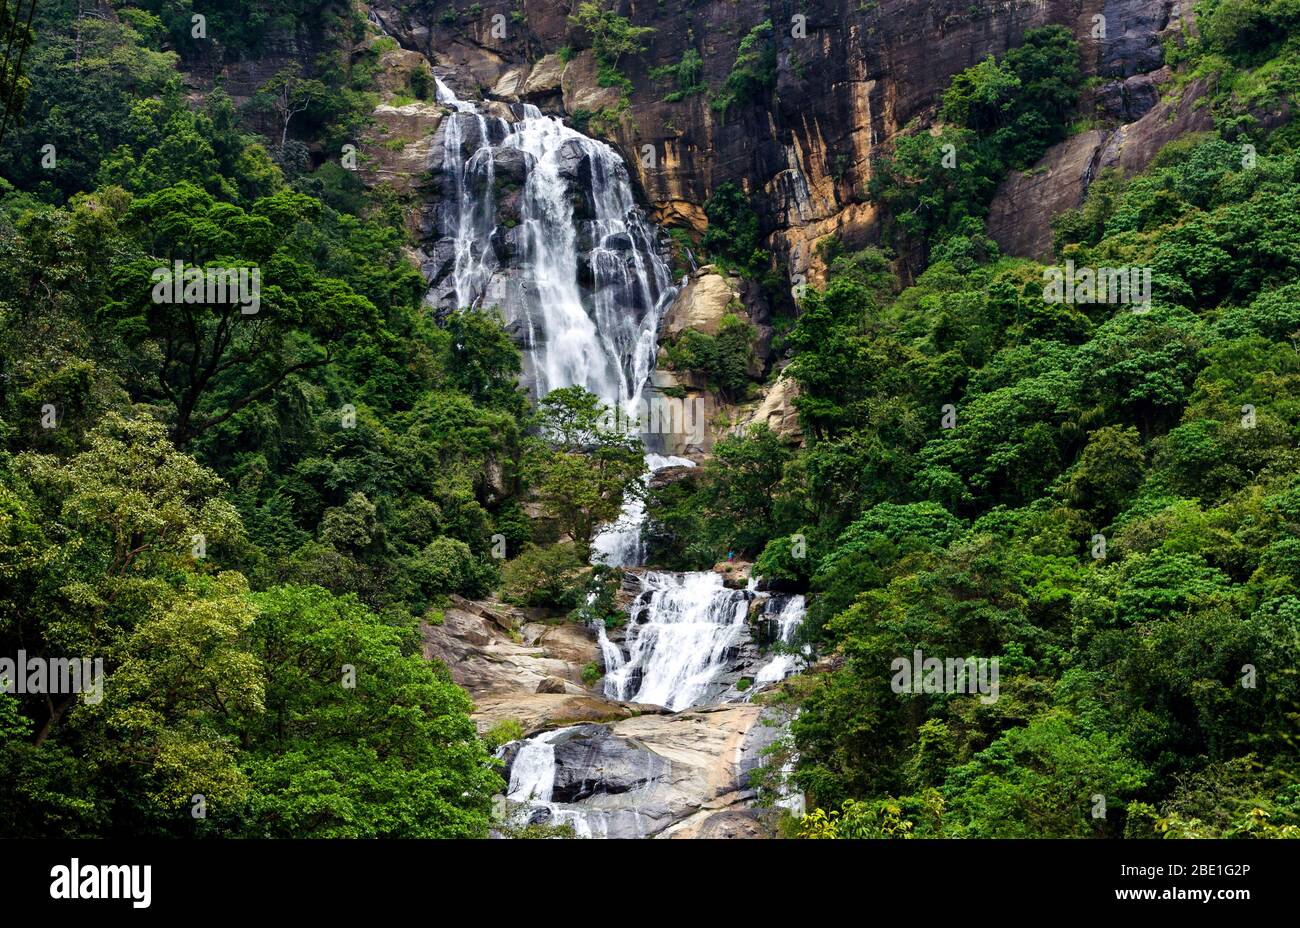 Le cascate di Ravana sono una popolare attrazione turistica a Ella, Sri Lanka. Attualmente si colloca come una delle più ampie cadute del paese. Foto Stock